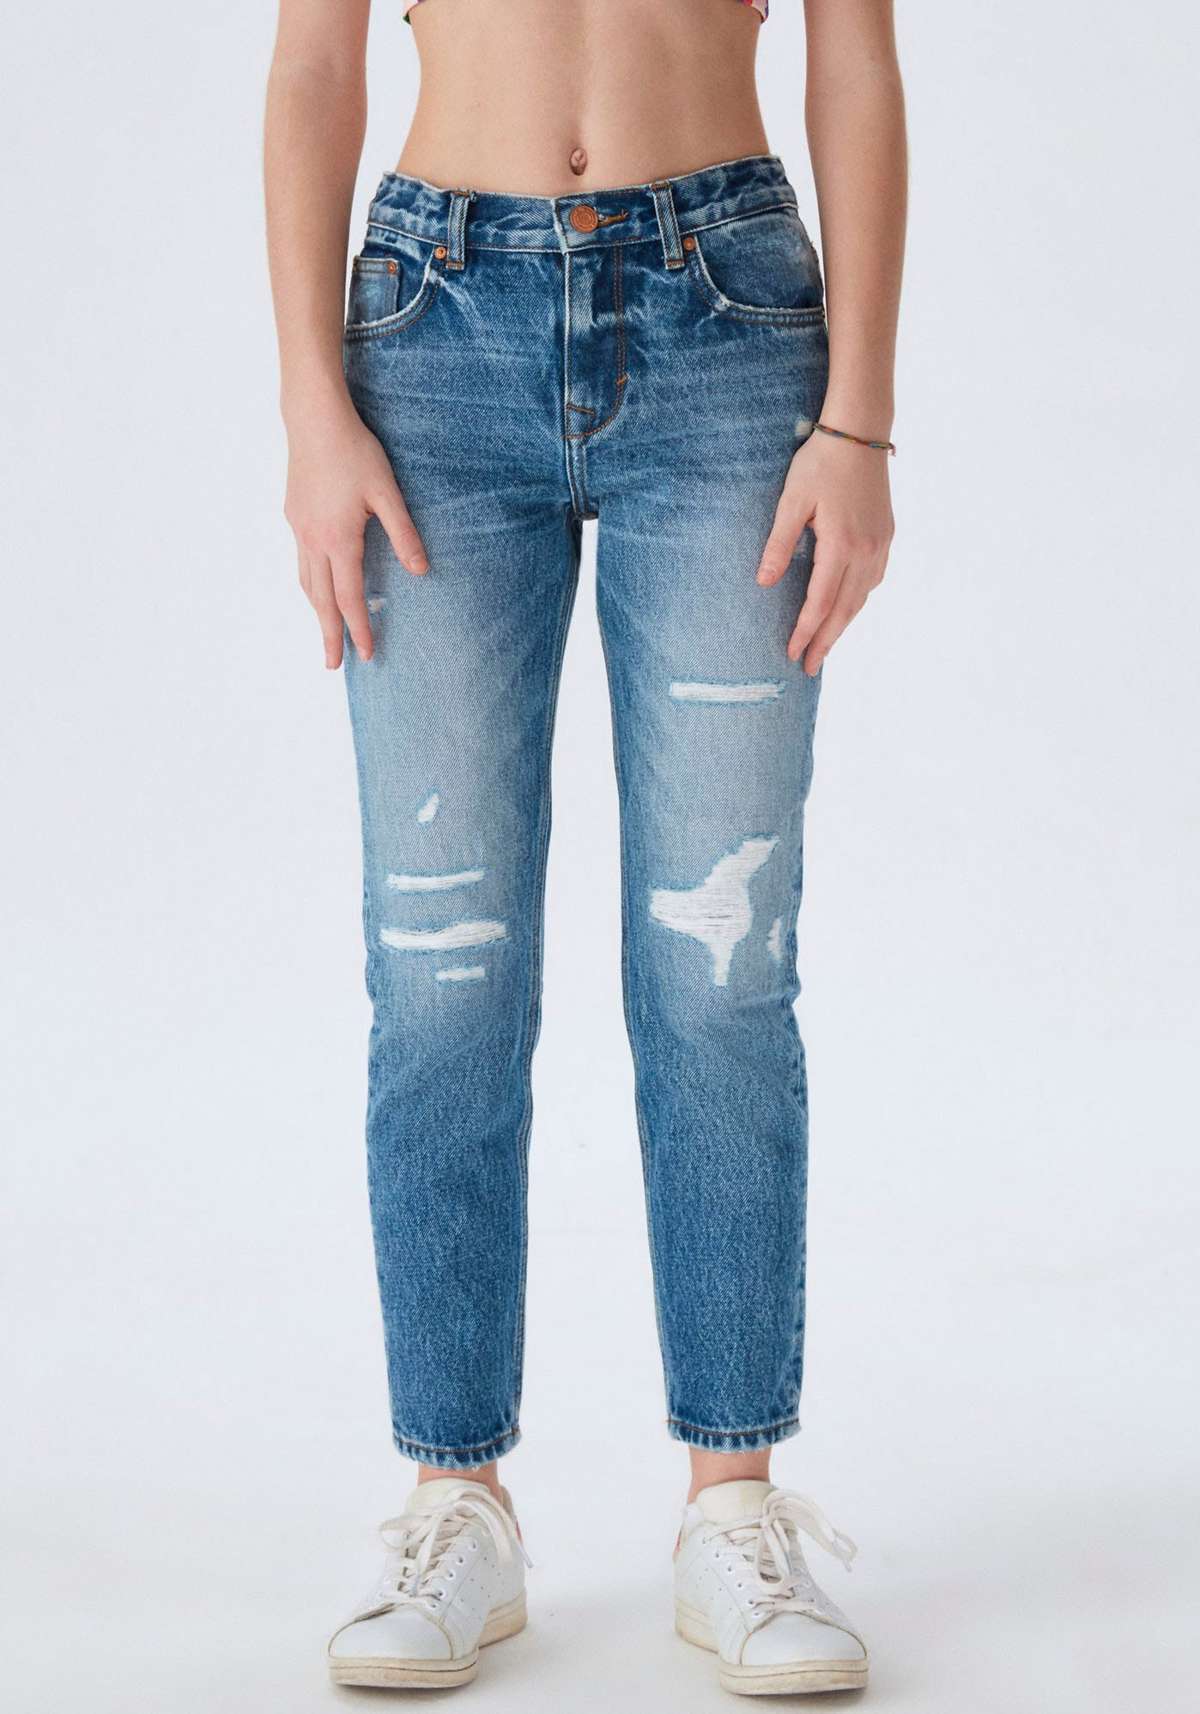 Потертые джинсы модной длины до щиколотки для ДЕВОЧЕК.